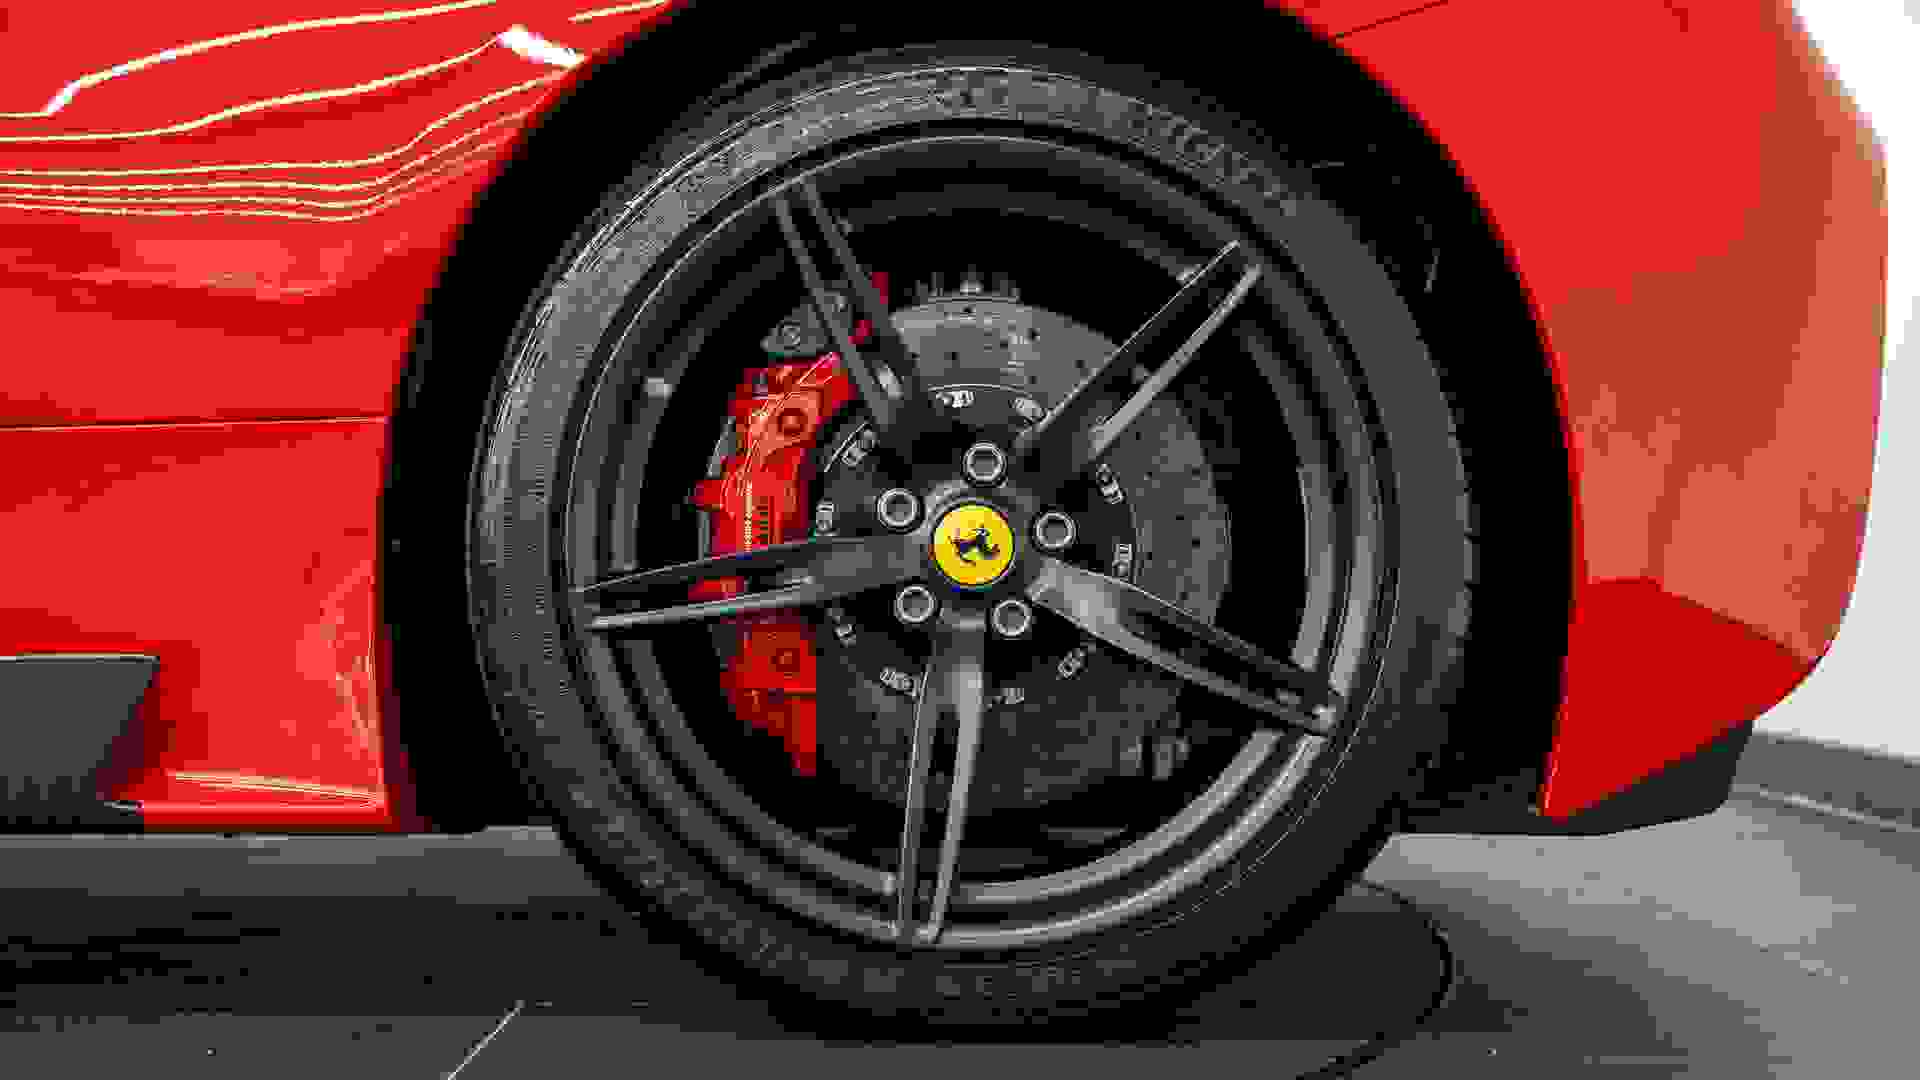 Ferrari 458 Photo 8be94213-6955-4430-a095-47b30082f55a.jpg